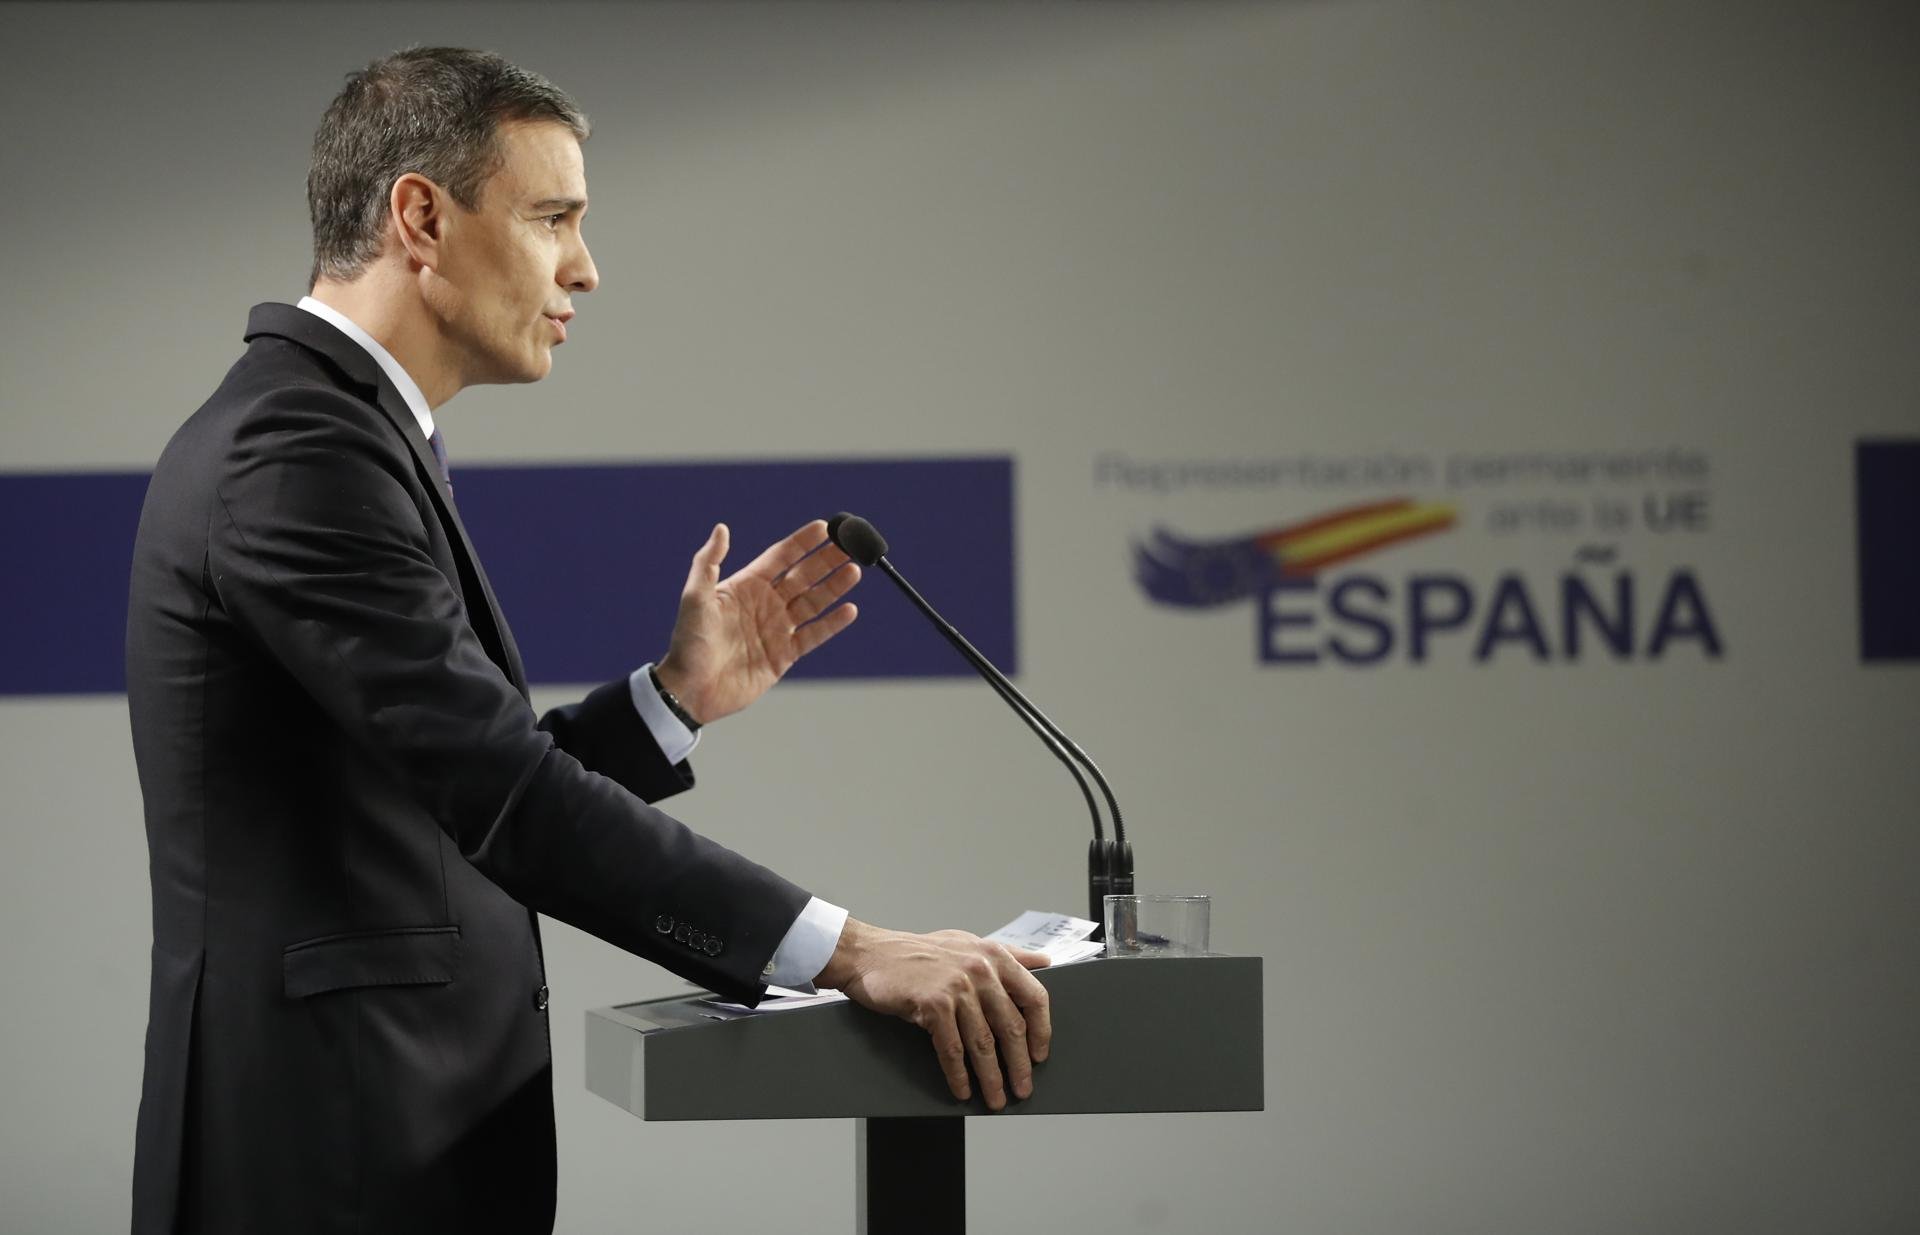 ¿Crees que la crisis institucional española facilitará la independencia de Catalunya?